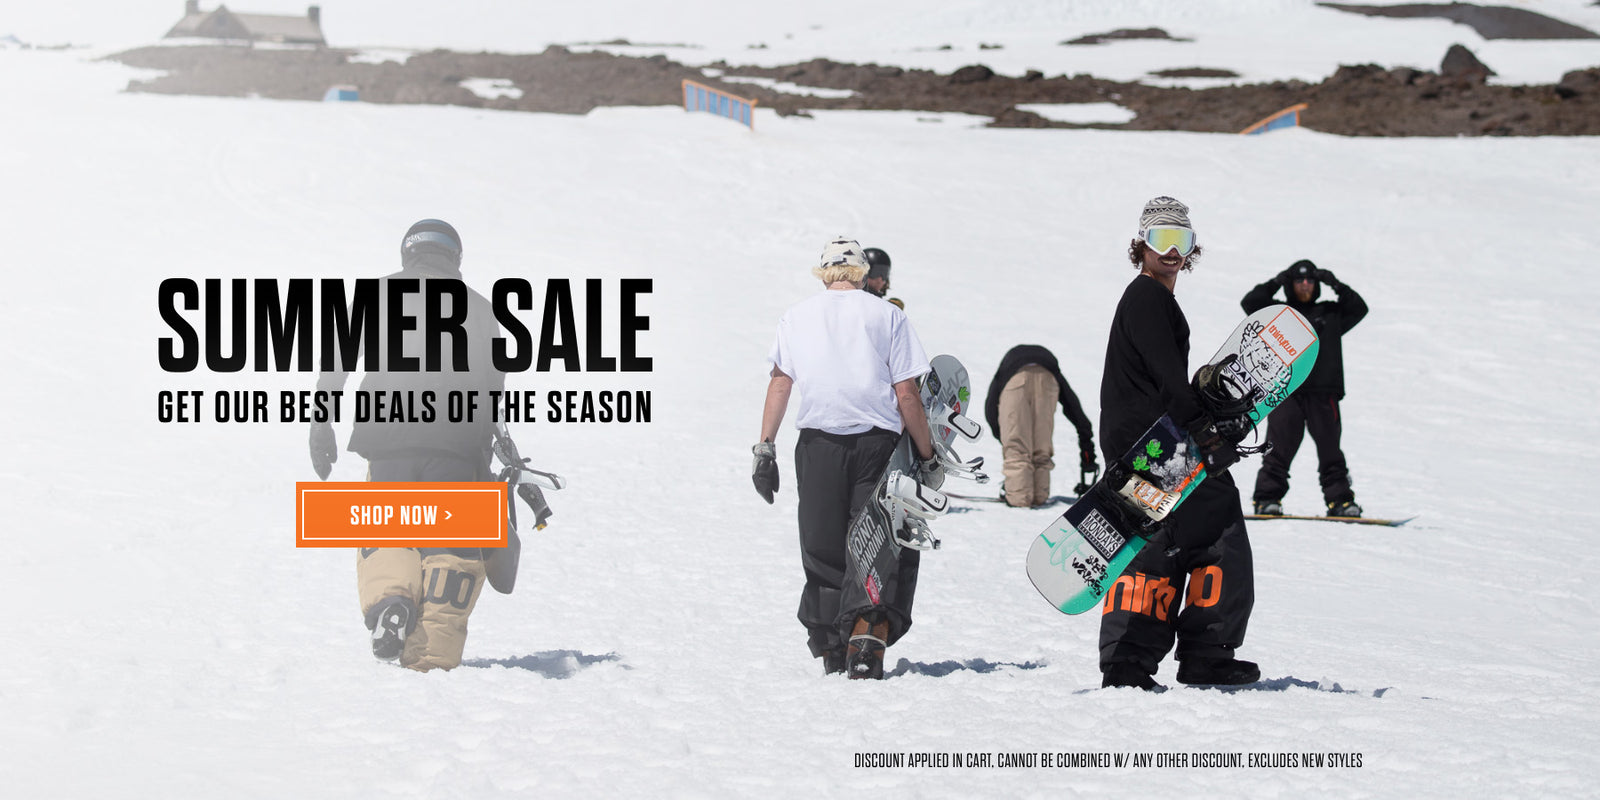 snowboard sales online